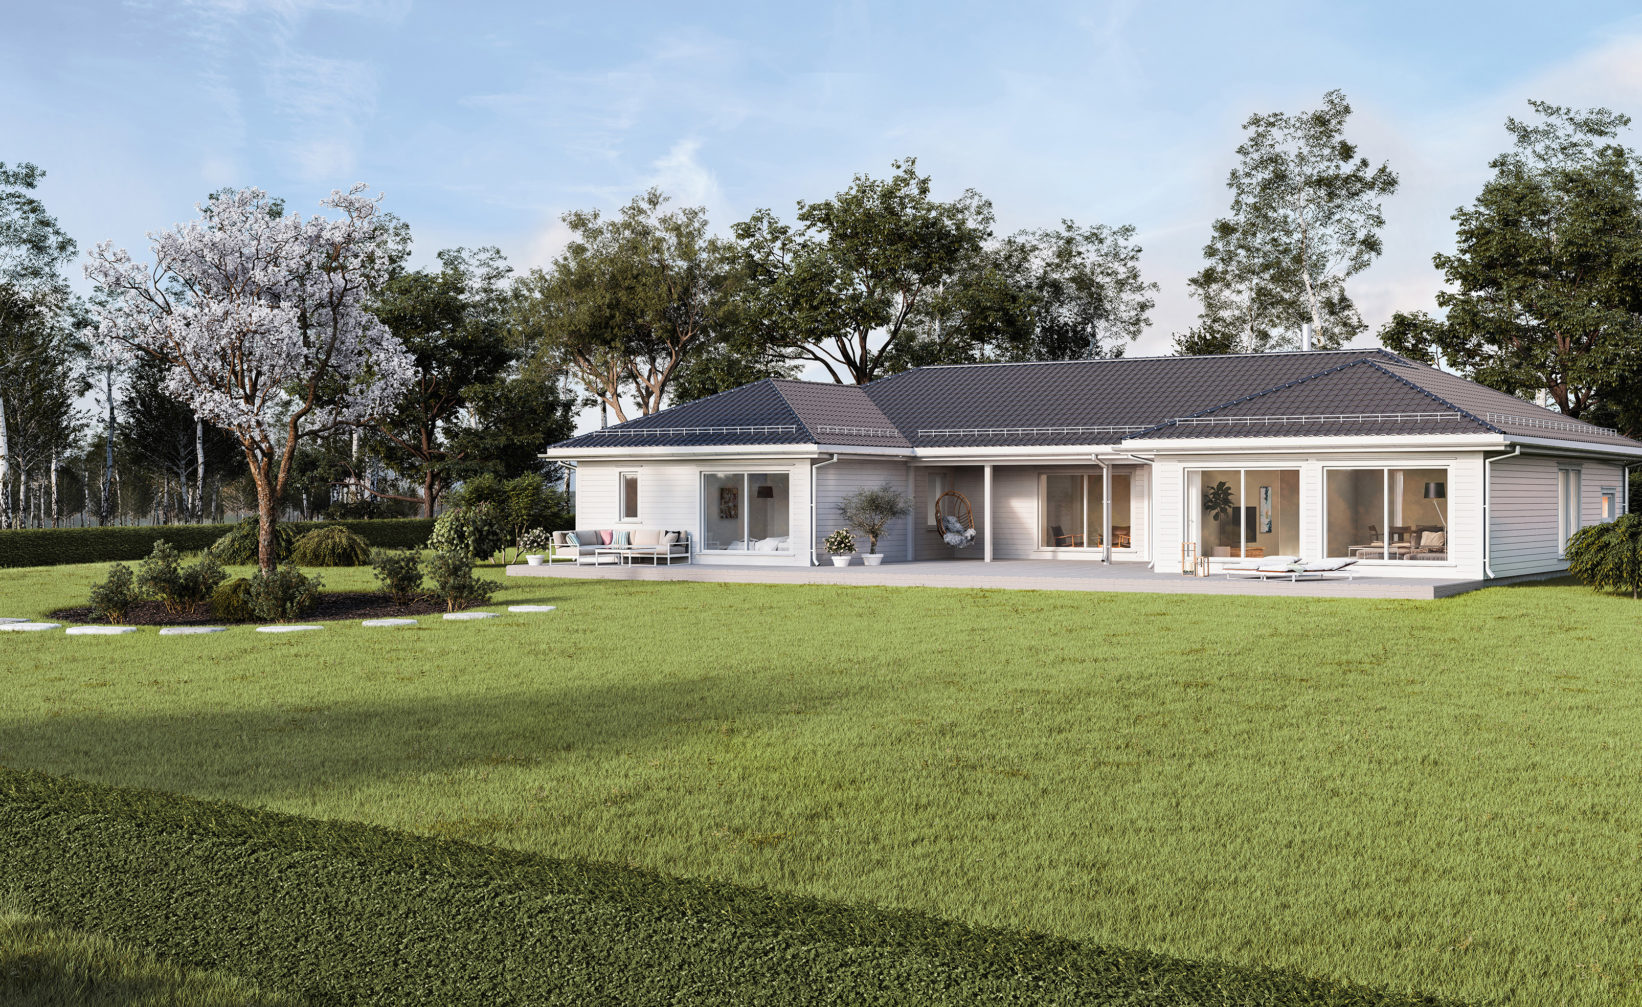 Et 3D-gjengitt hus med en grønn plen til salgs i 2017.